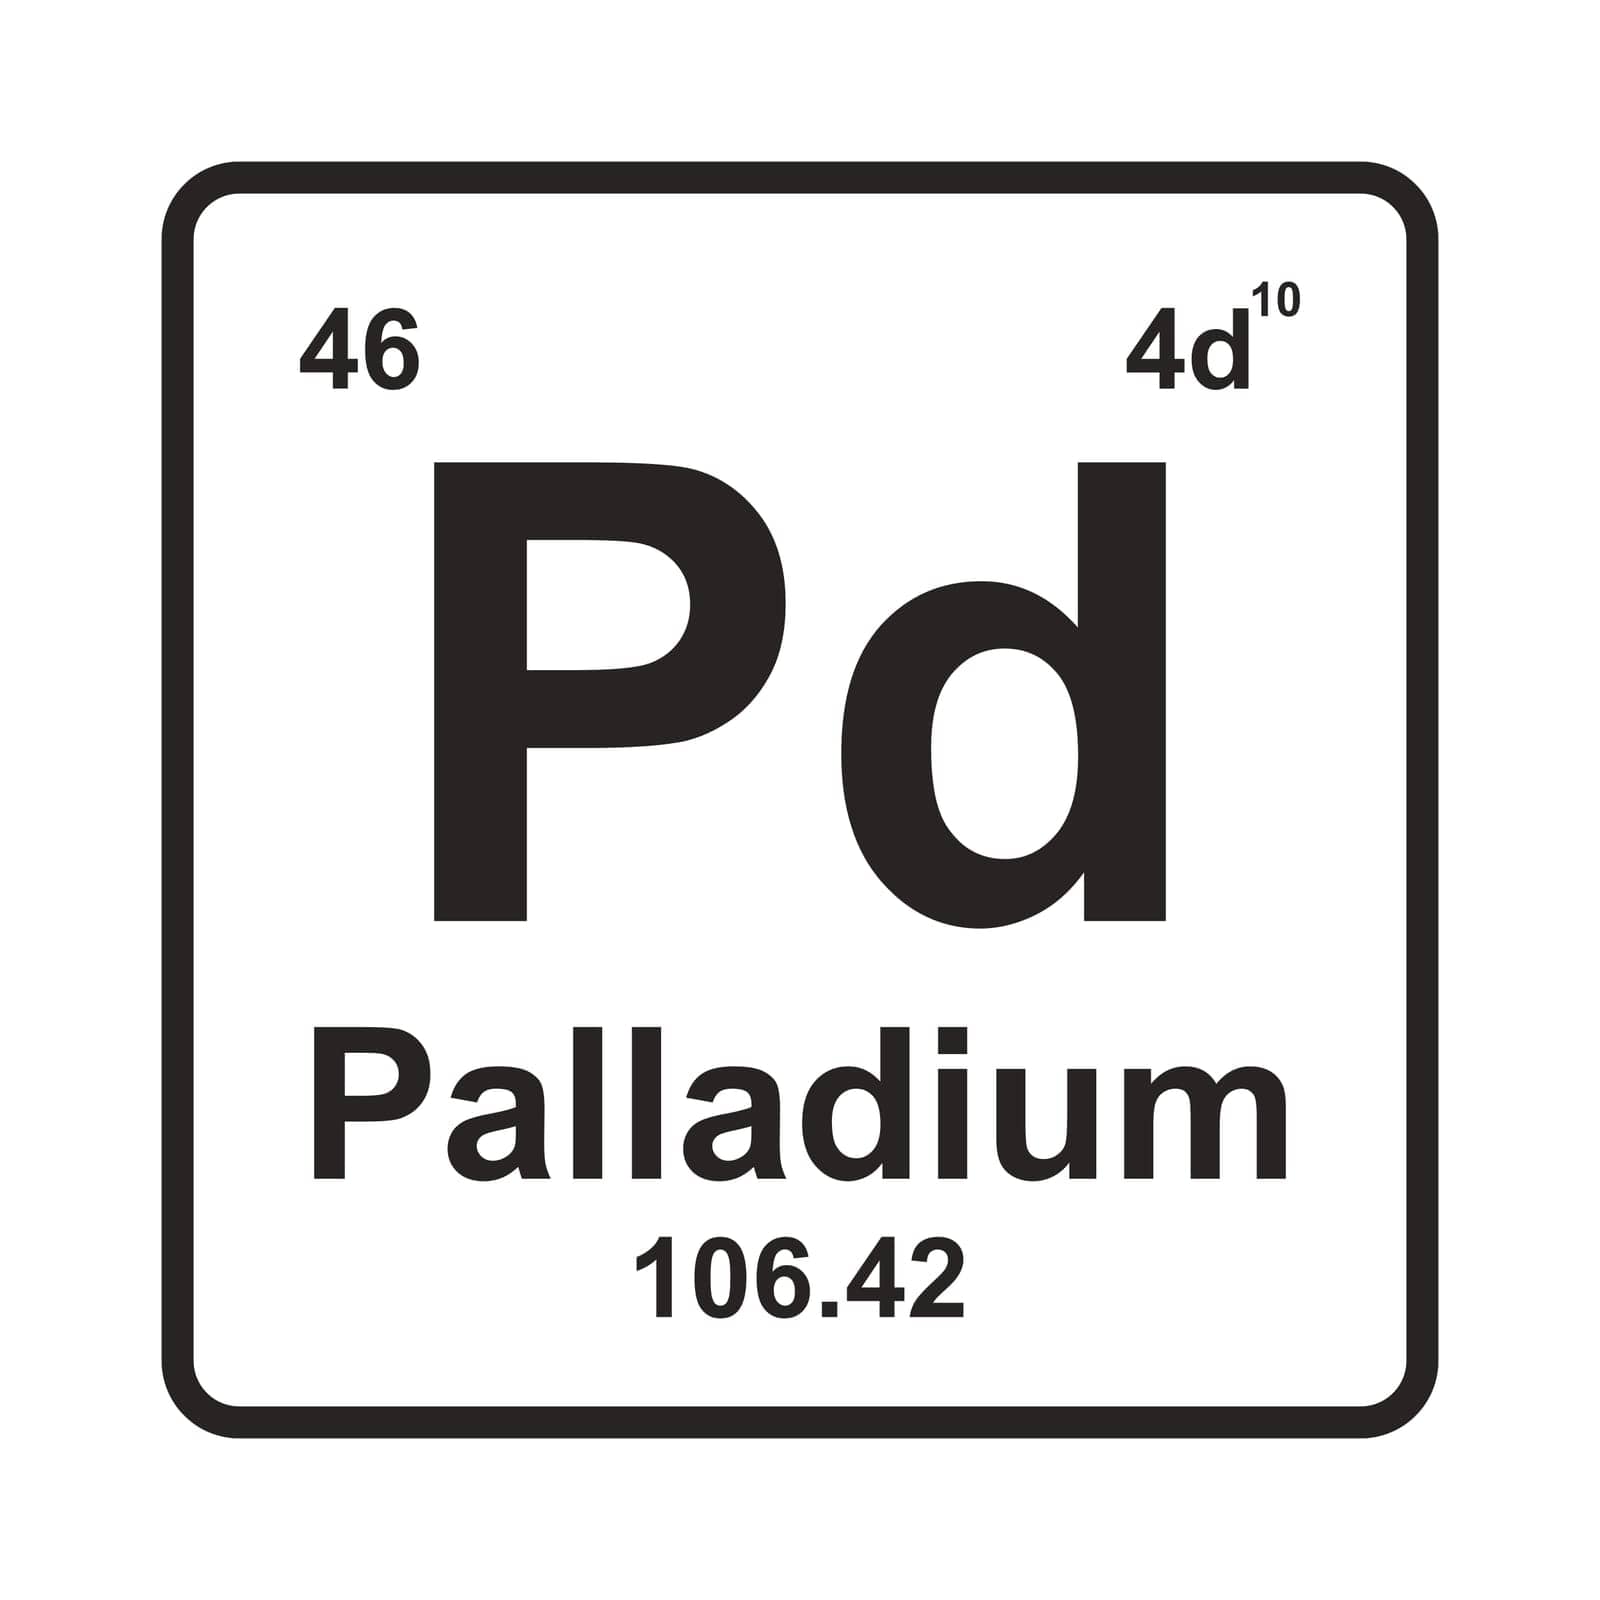 Palladium Element icon vector illustration symbol design